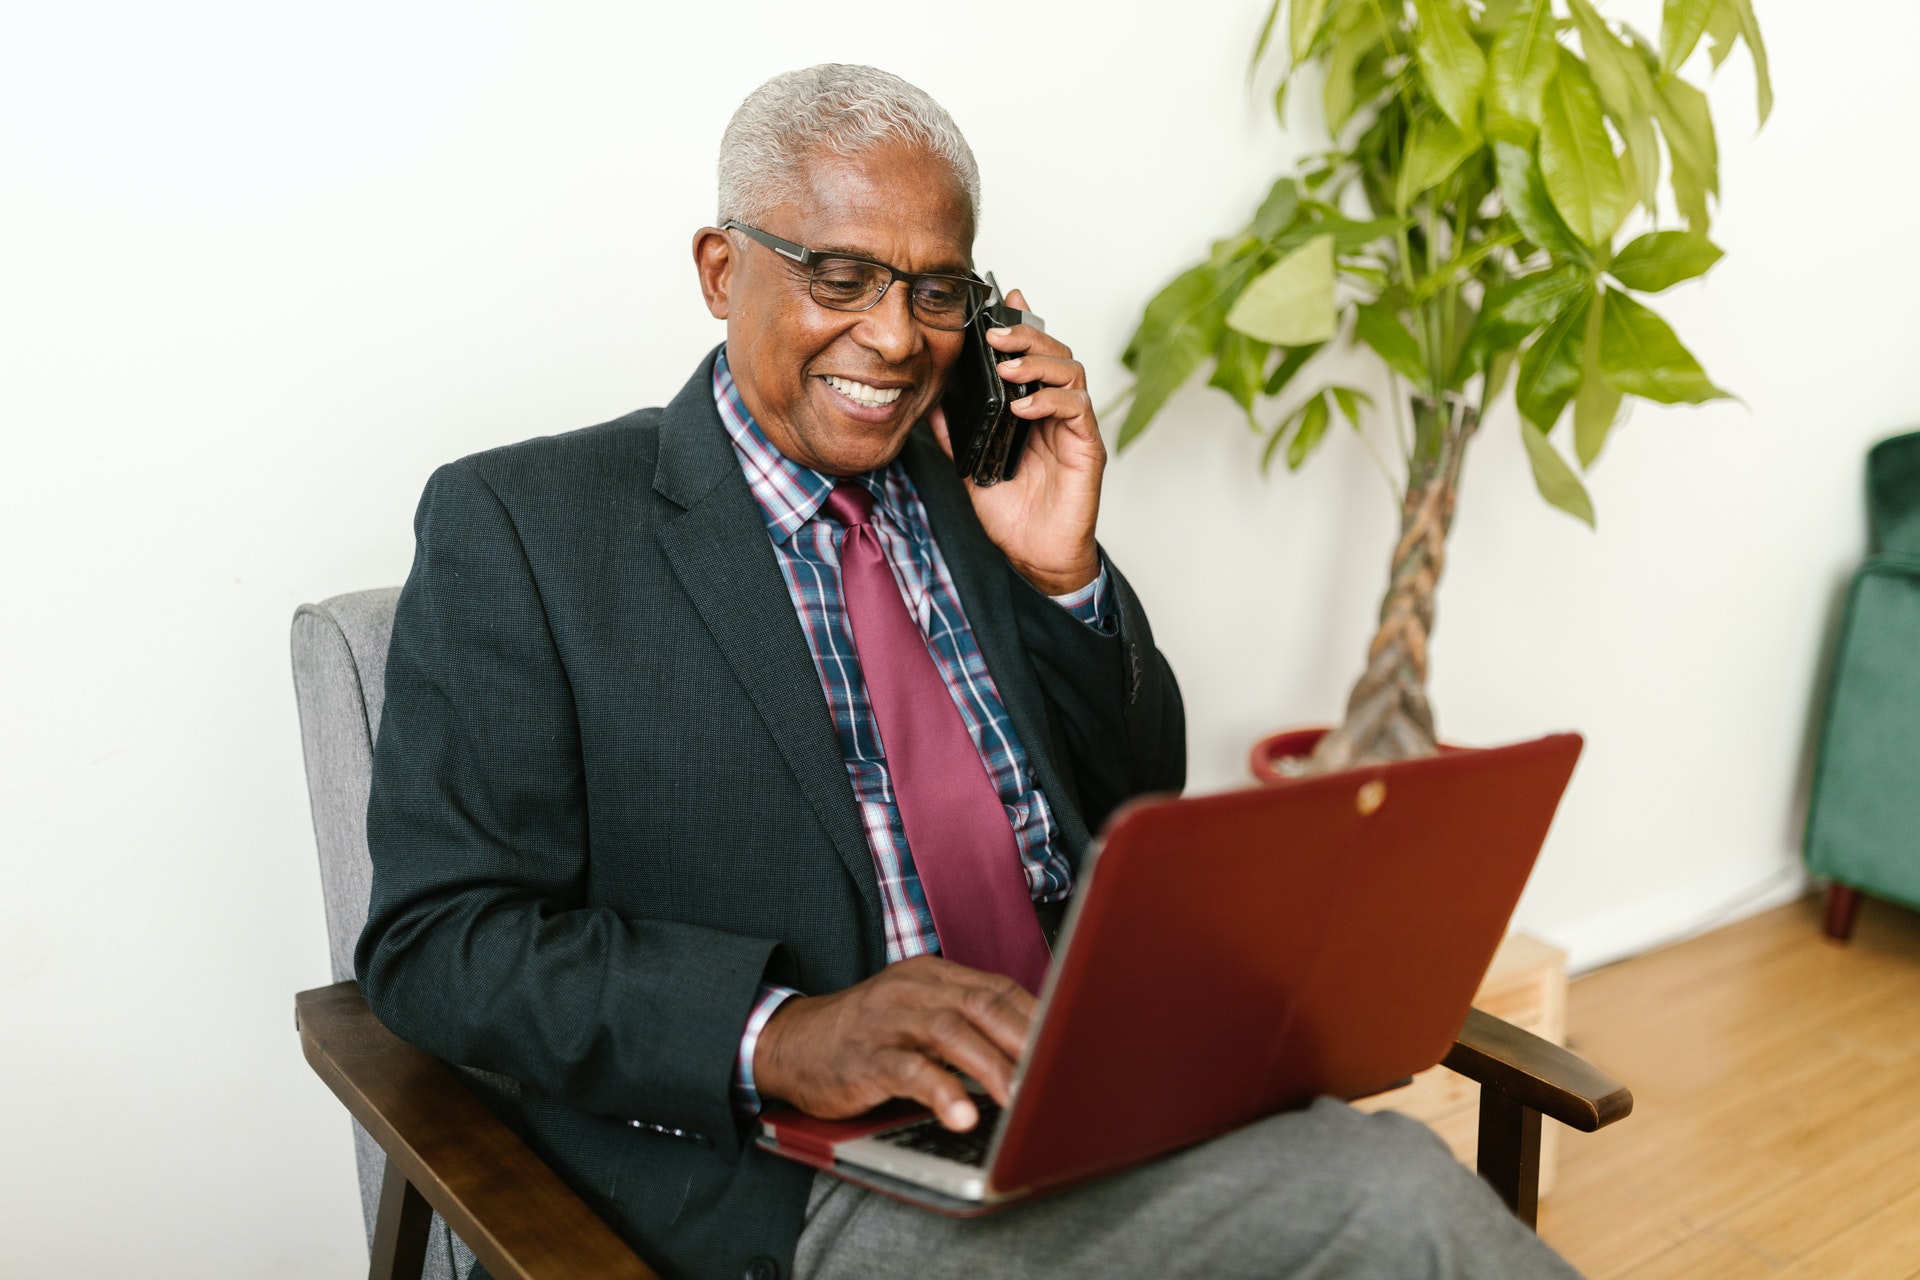 Homem sorrindo falando ao telefone e com um computador no colo. Imagem ilustrativa do texto dicas de empreendimentos.